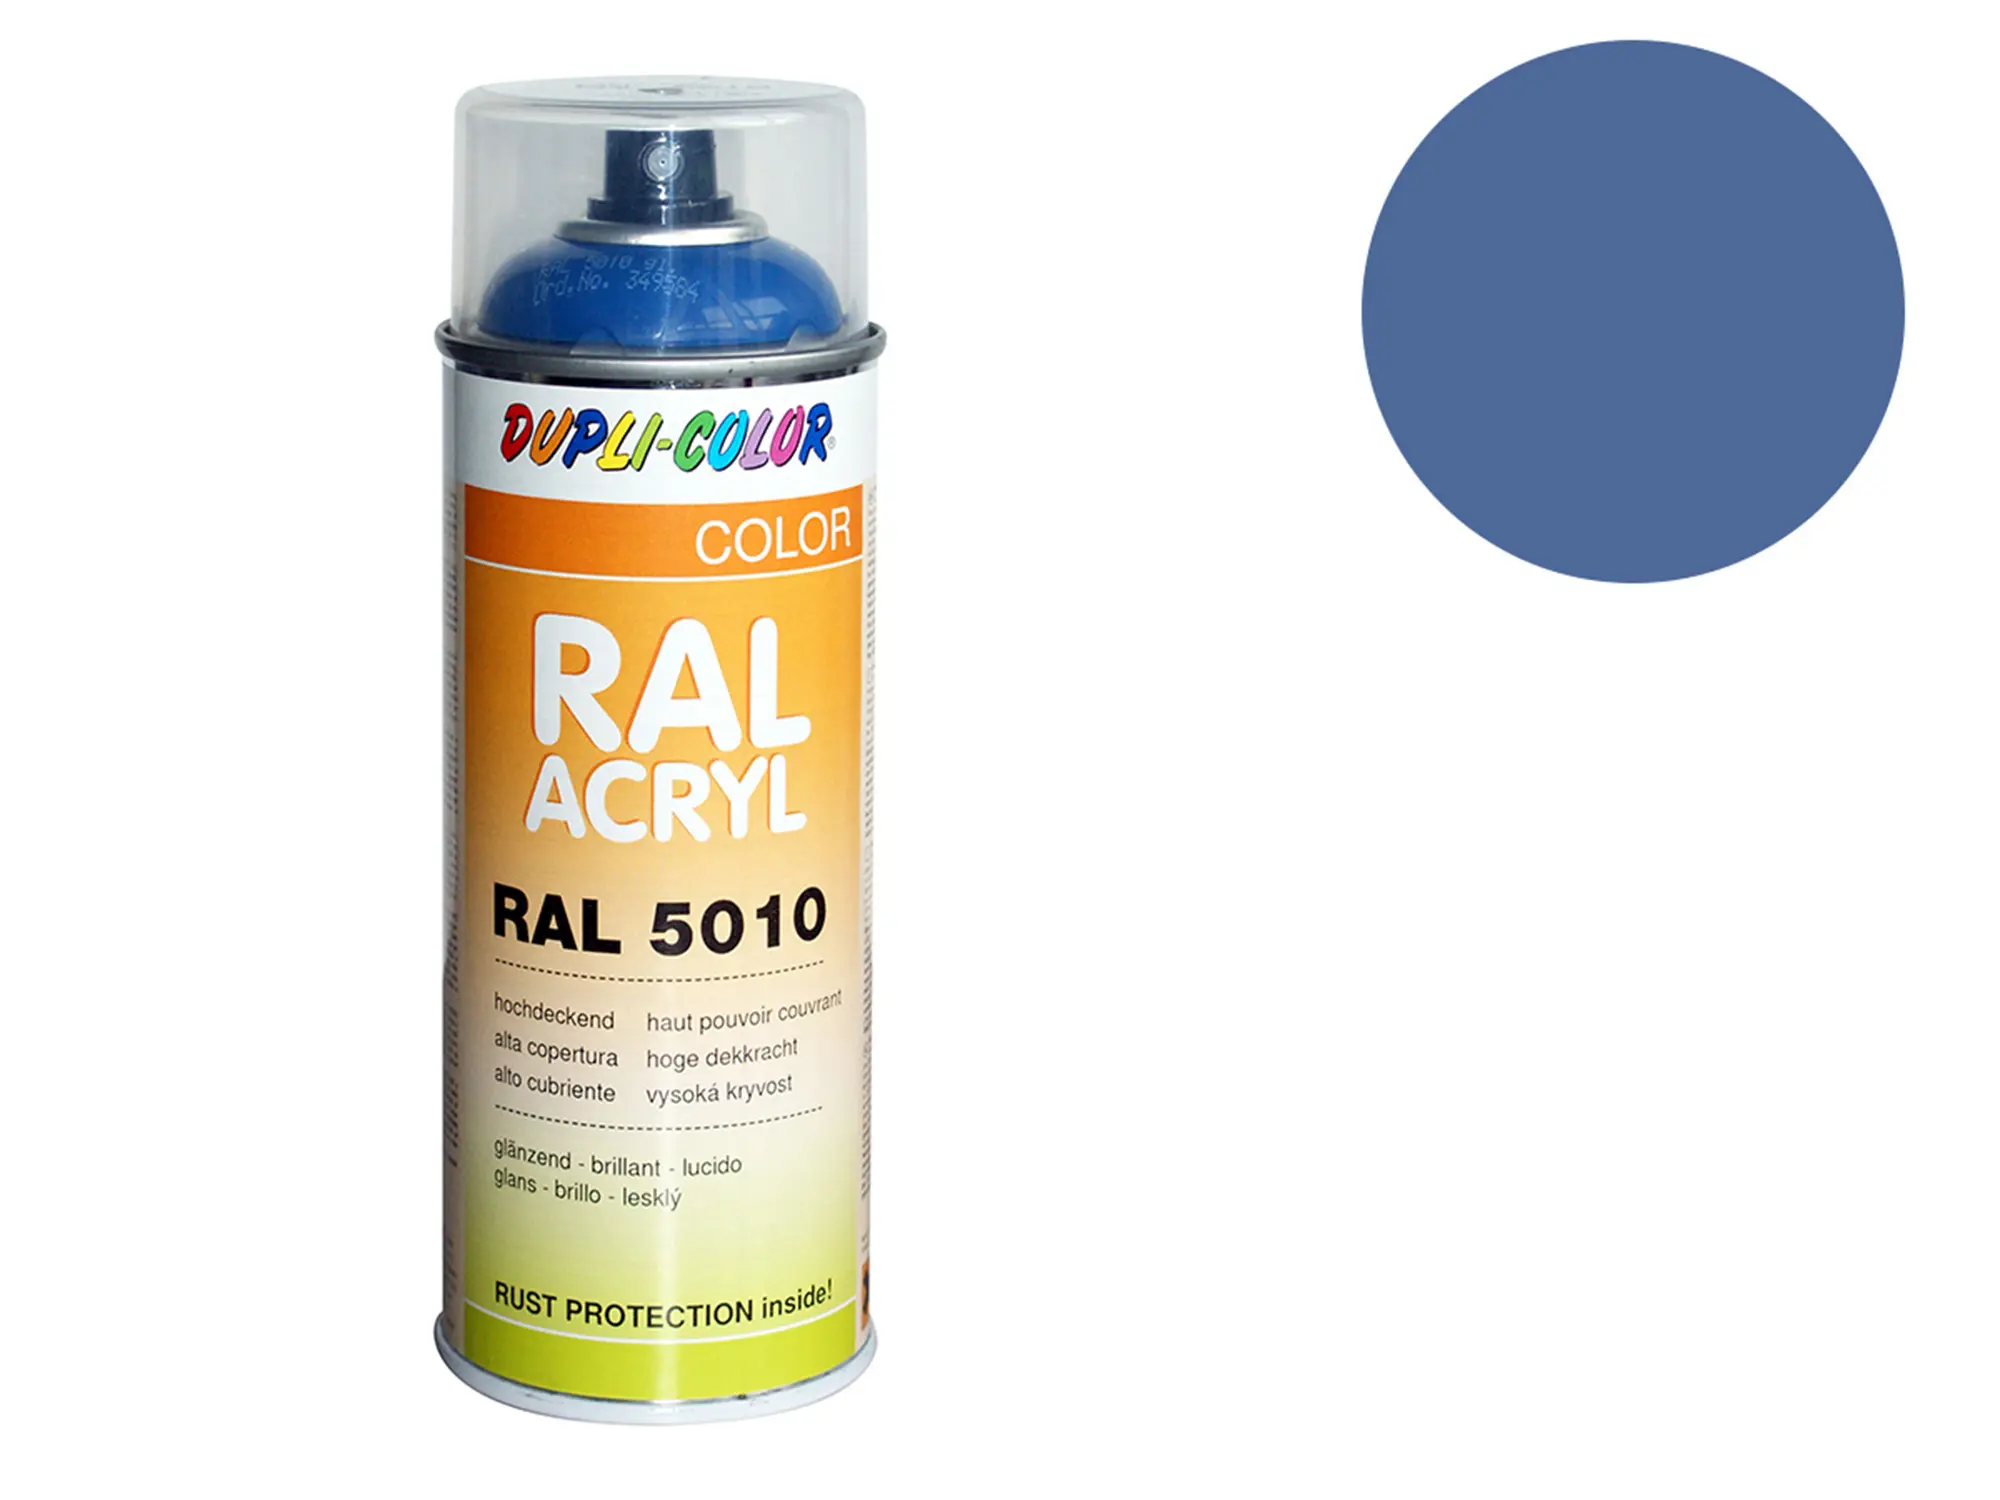 Dupli-Color Acryl-Spray RAL 5014 taubenblau, glänzend - 400 ml, Art.-Nr.: 10064799 - Bild 1